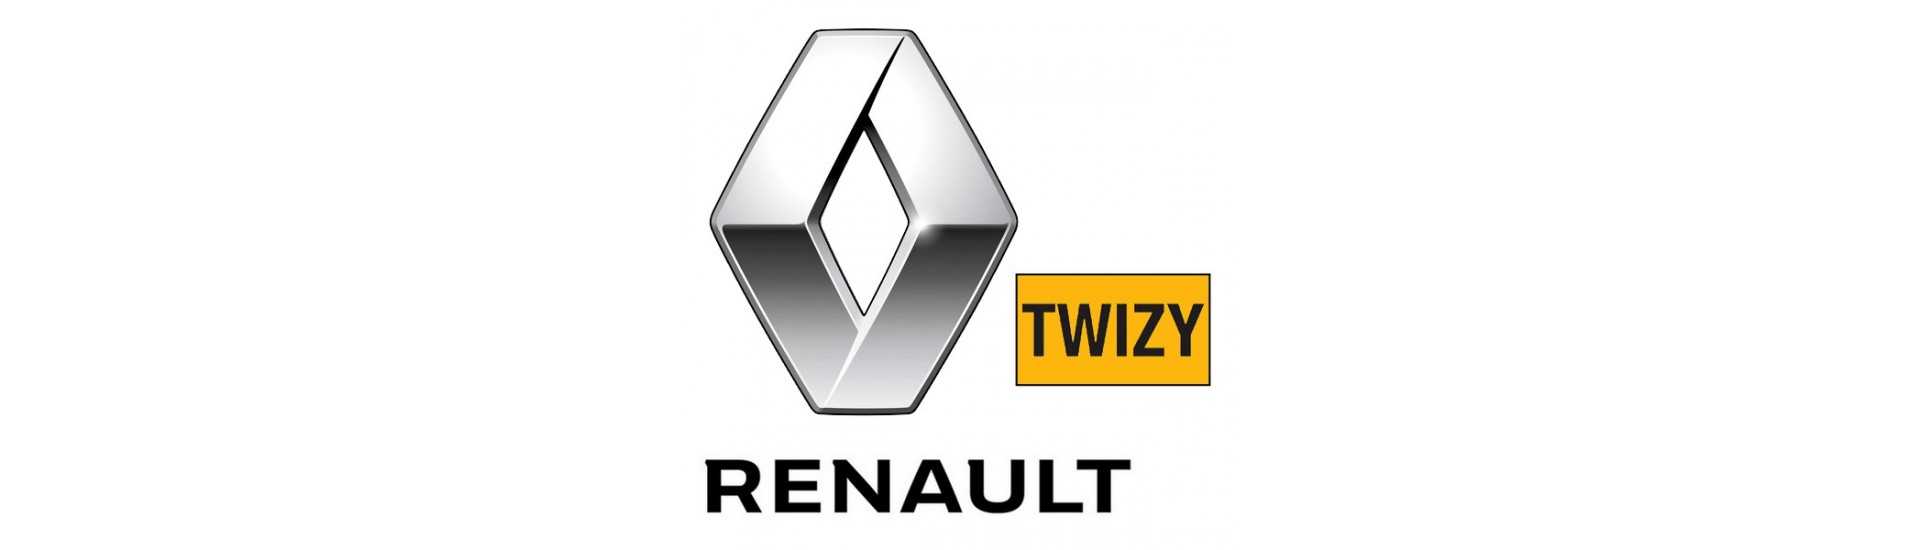 Arrêt de porte au meilleur prix pour voiture sans permis Renault Twizy